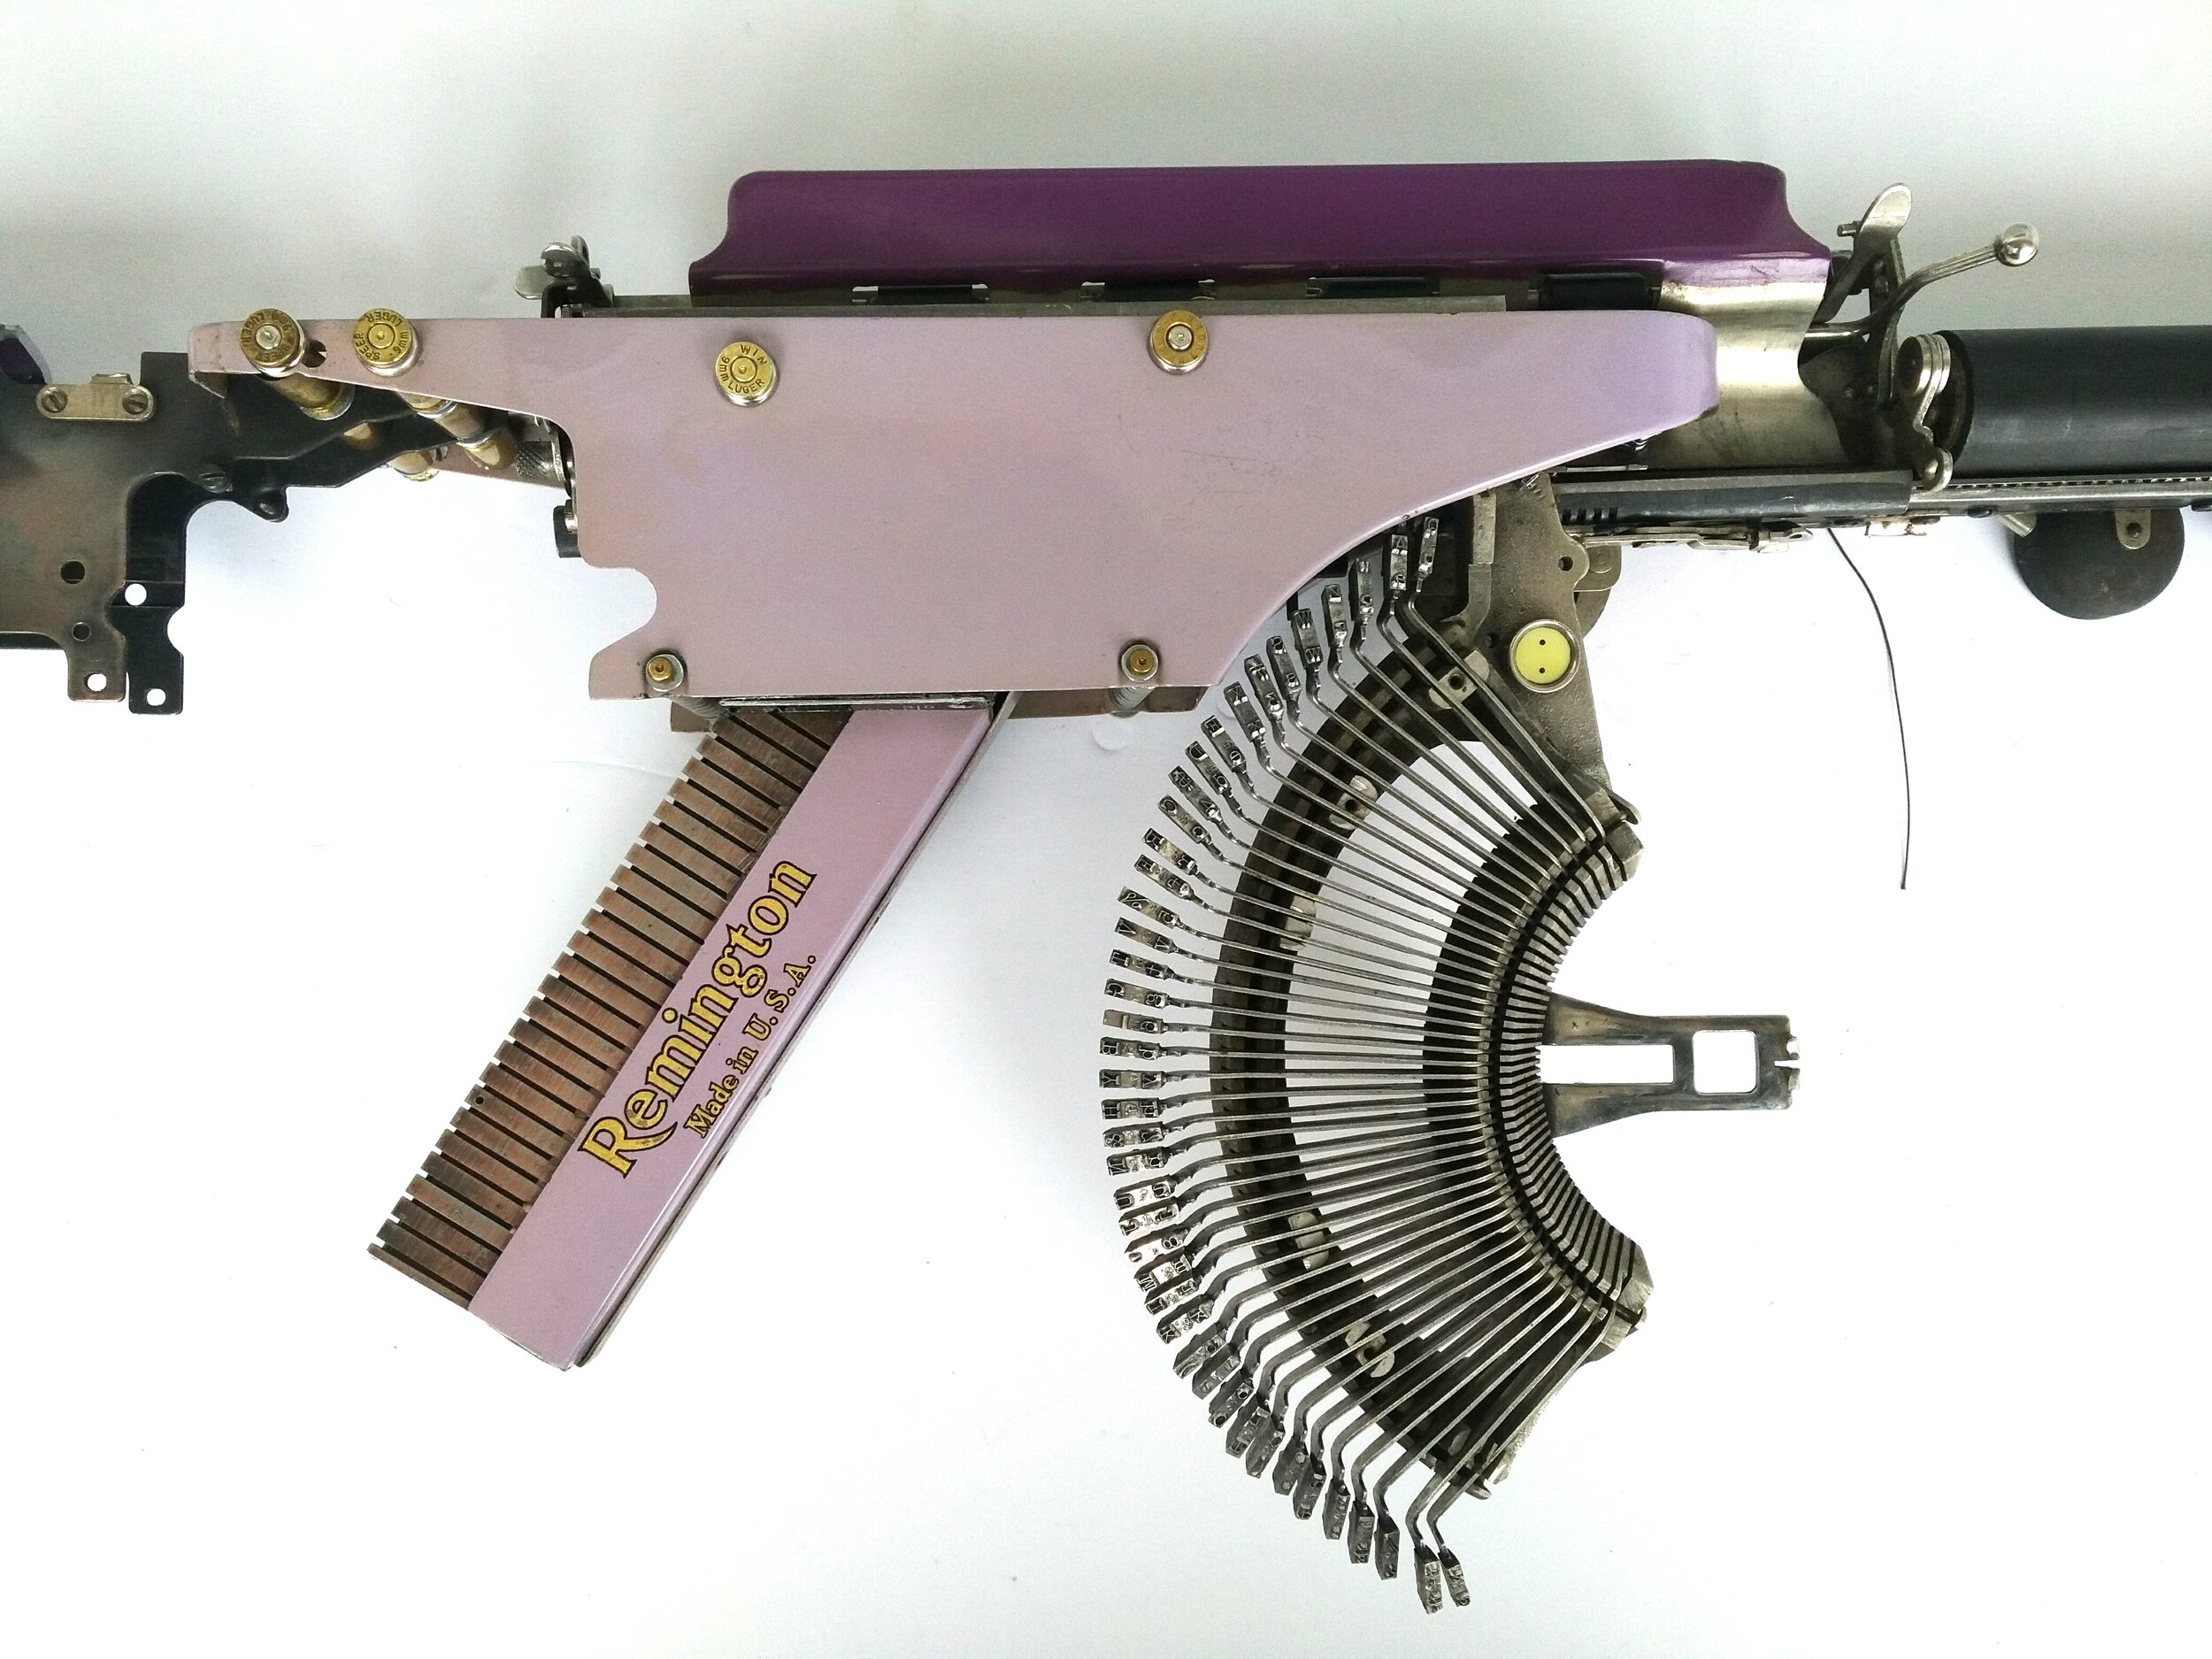  Eric Nado  - Rem Purple USA (Detail) - Typewriter MachineGun series - Size: 11" x 29" x 3” inches -  Transformed vintage Remington typewriter gun- SOLD 